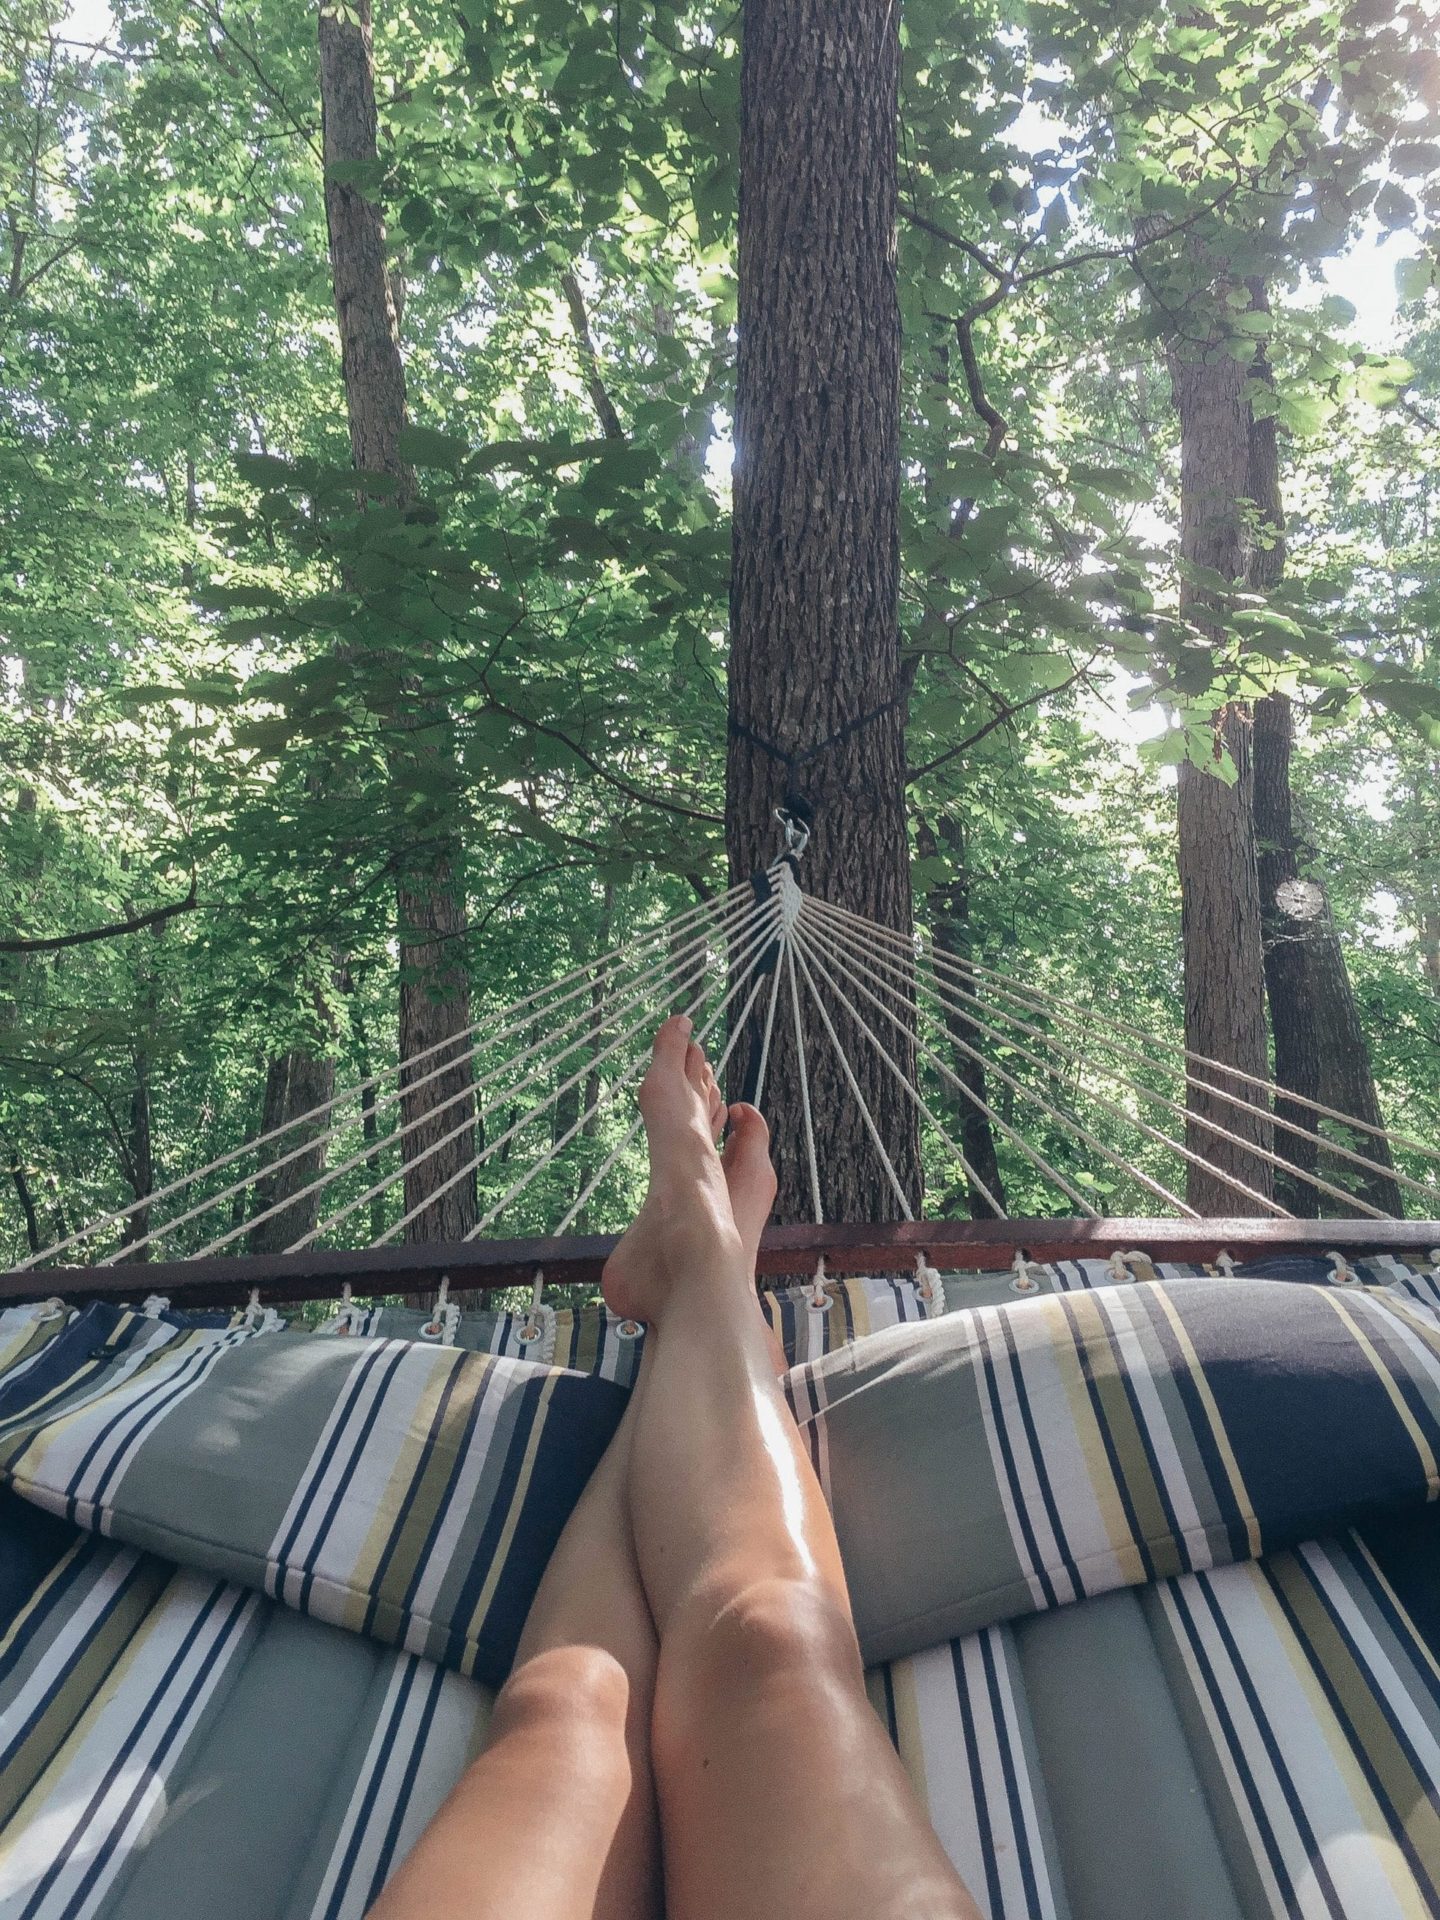 legs in a hammock